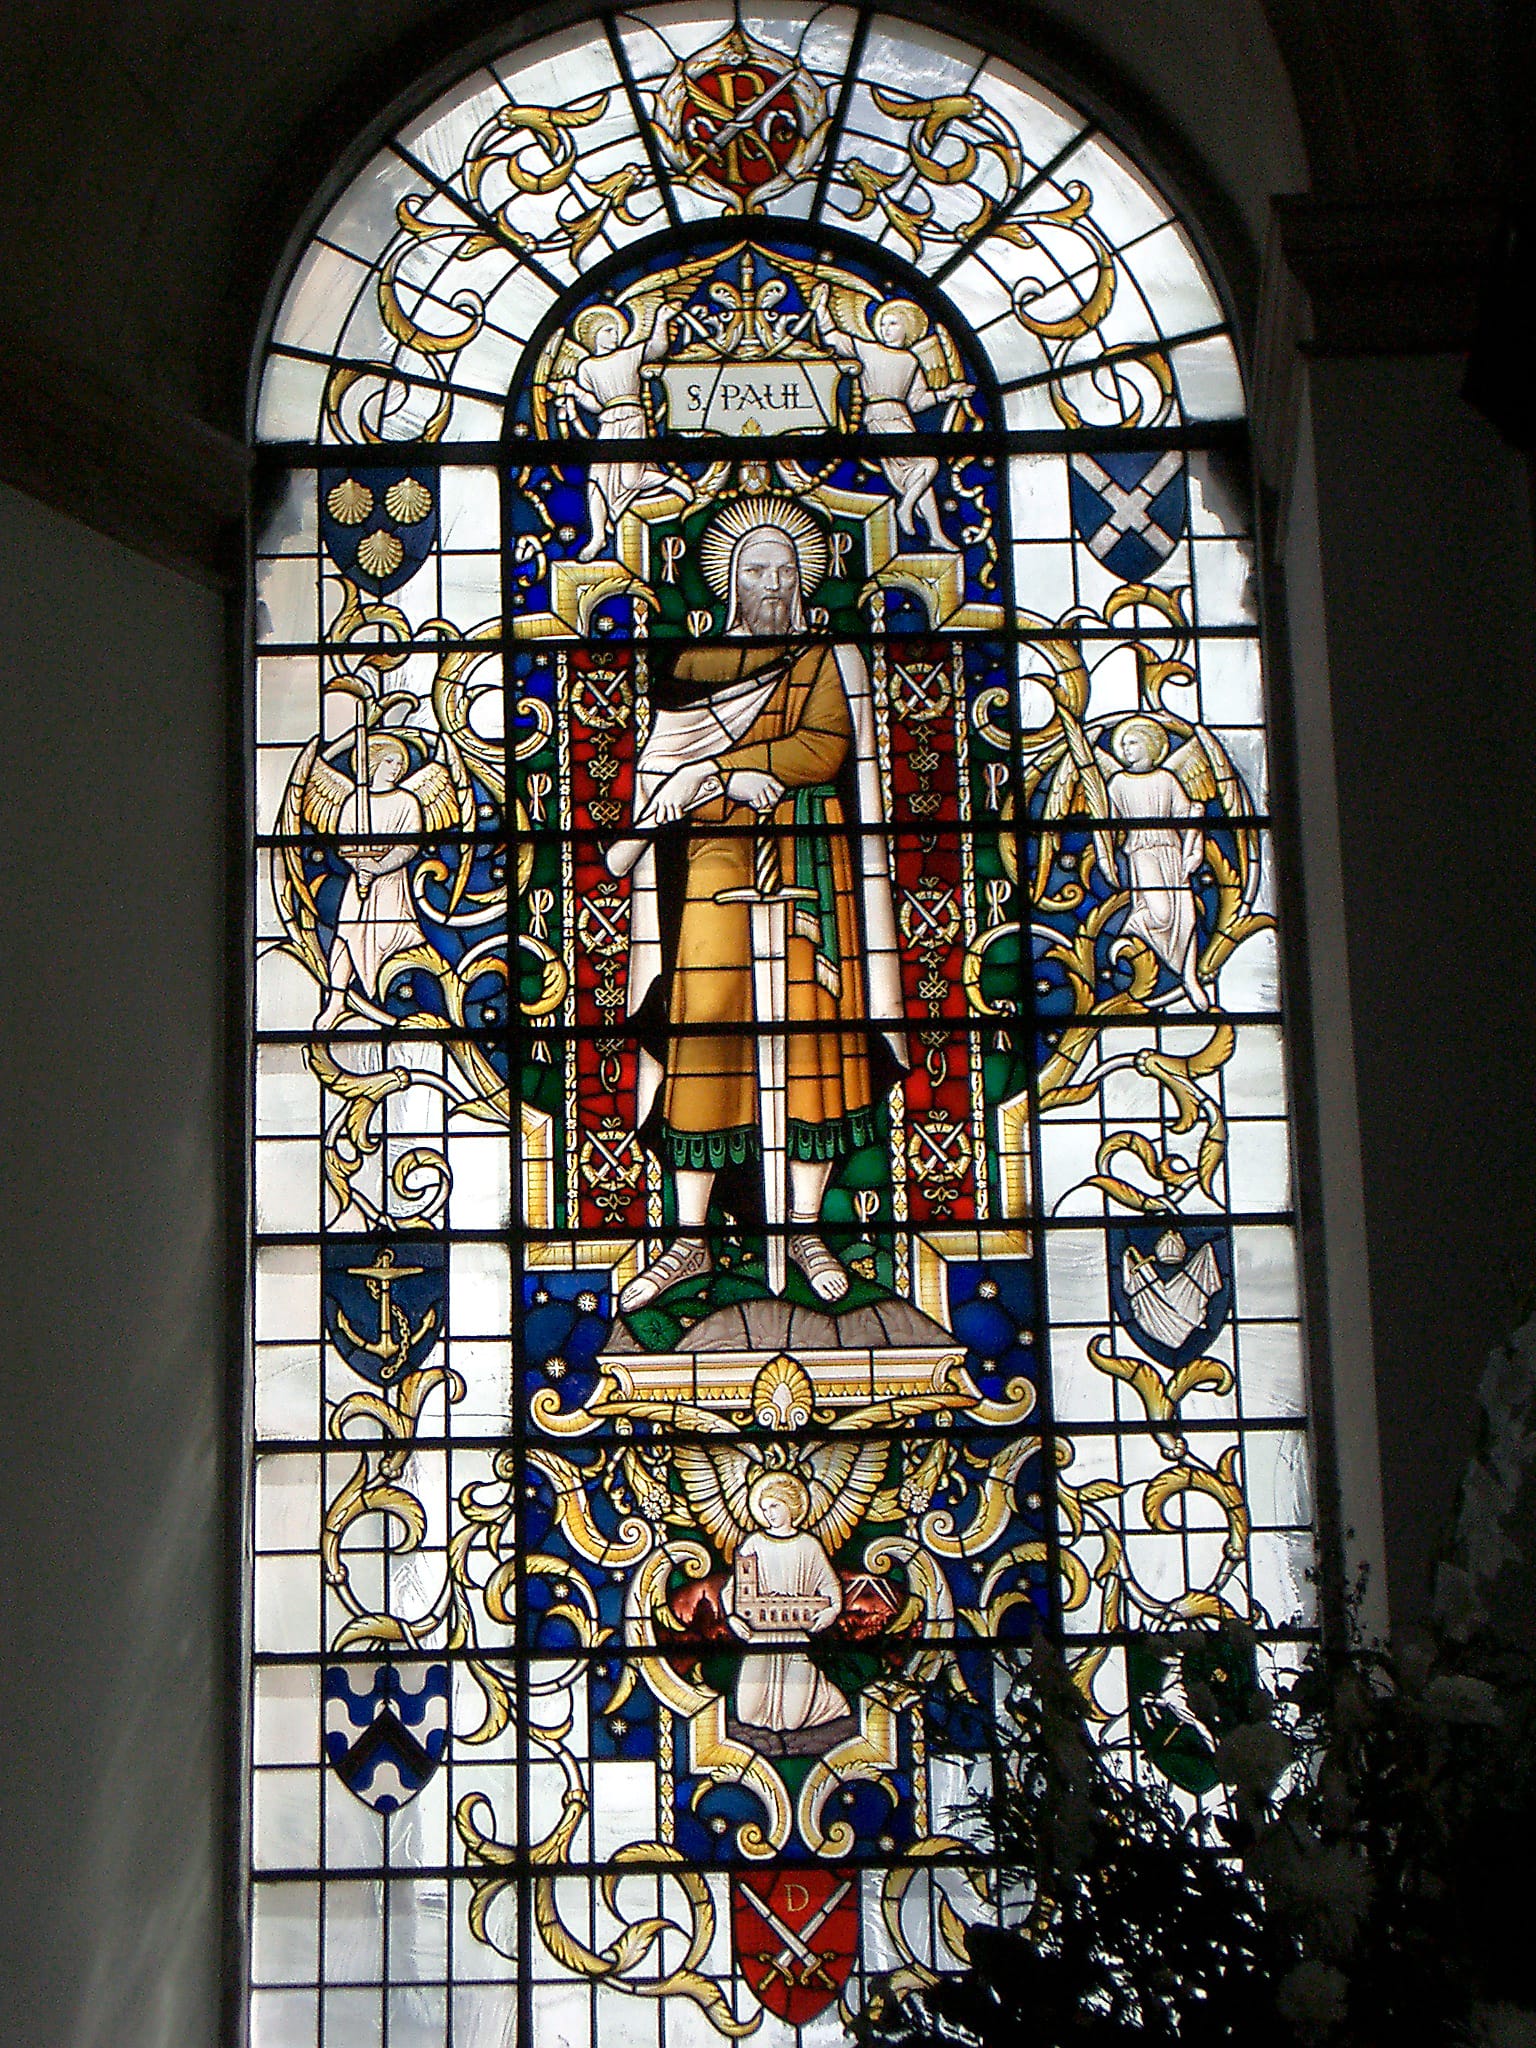 St. Paul window, St. Lawrence Jewry, London, England ©2006 GRevelstoke